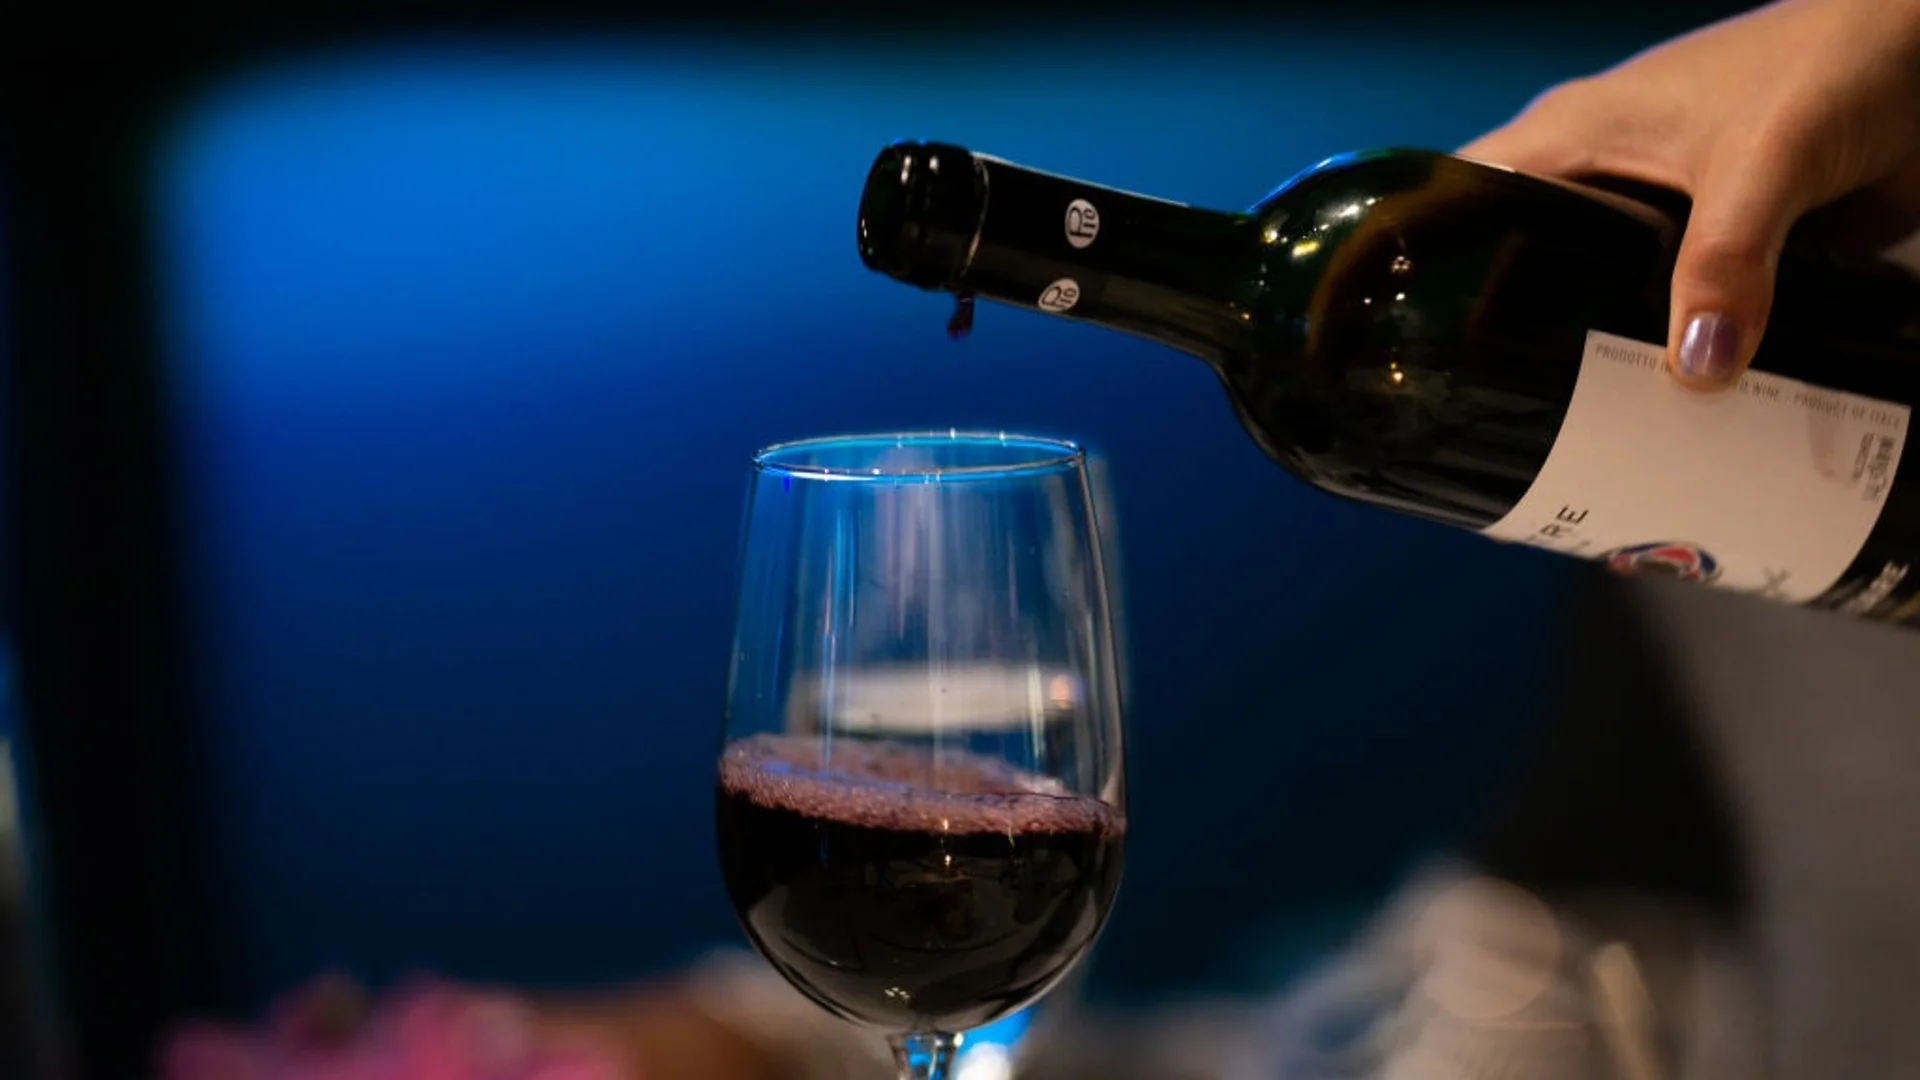 Червено или бяло вино - кое е по-здравословно